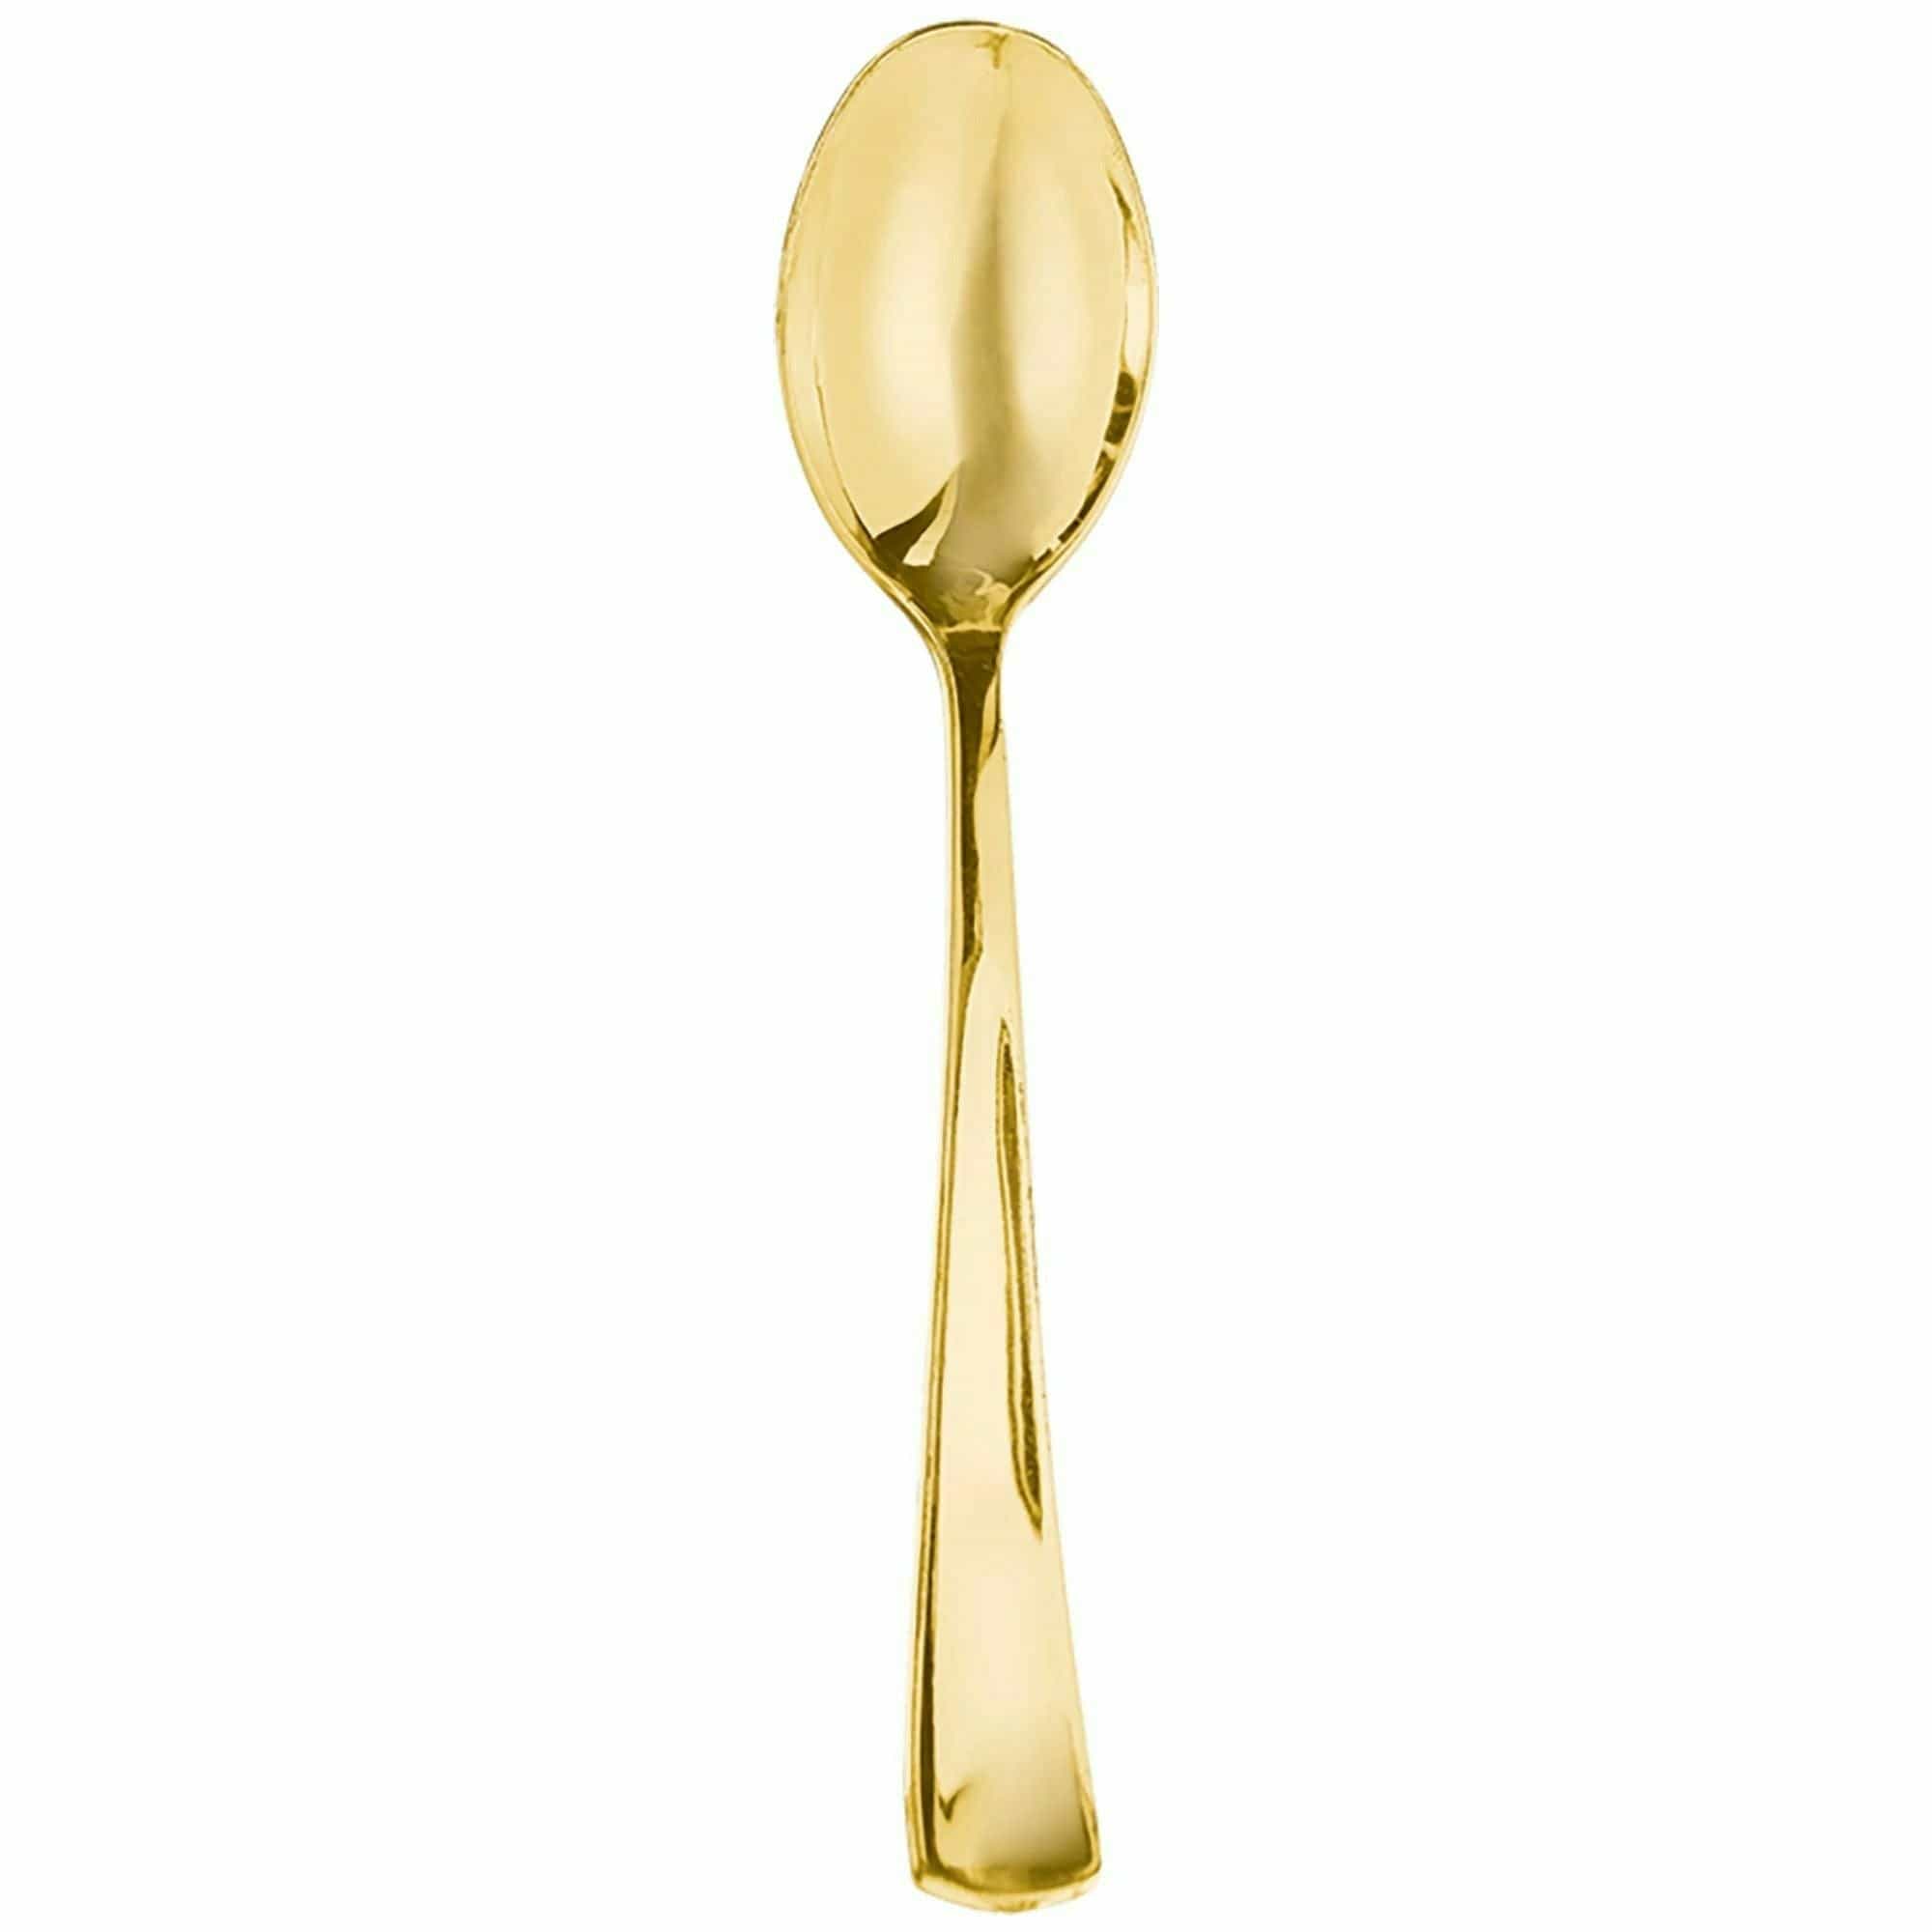 Amscan BASIC Premium Metallic Spoon - Gold